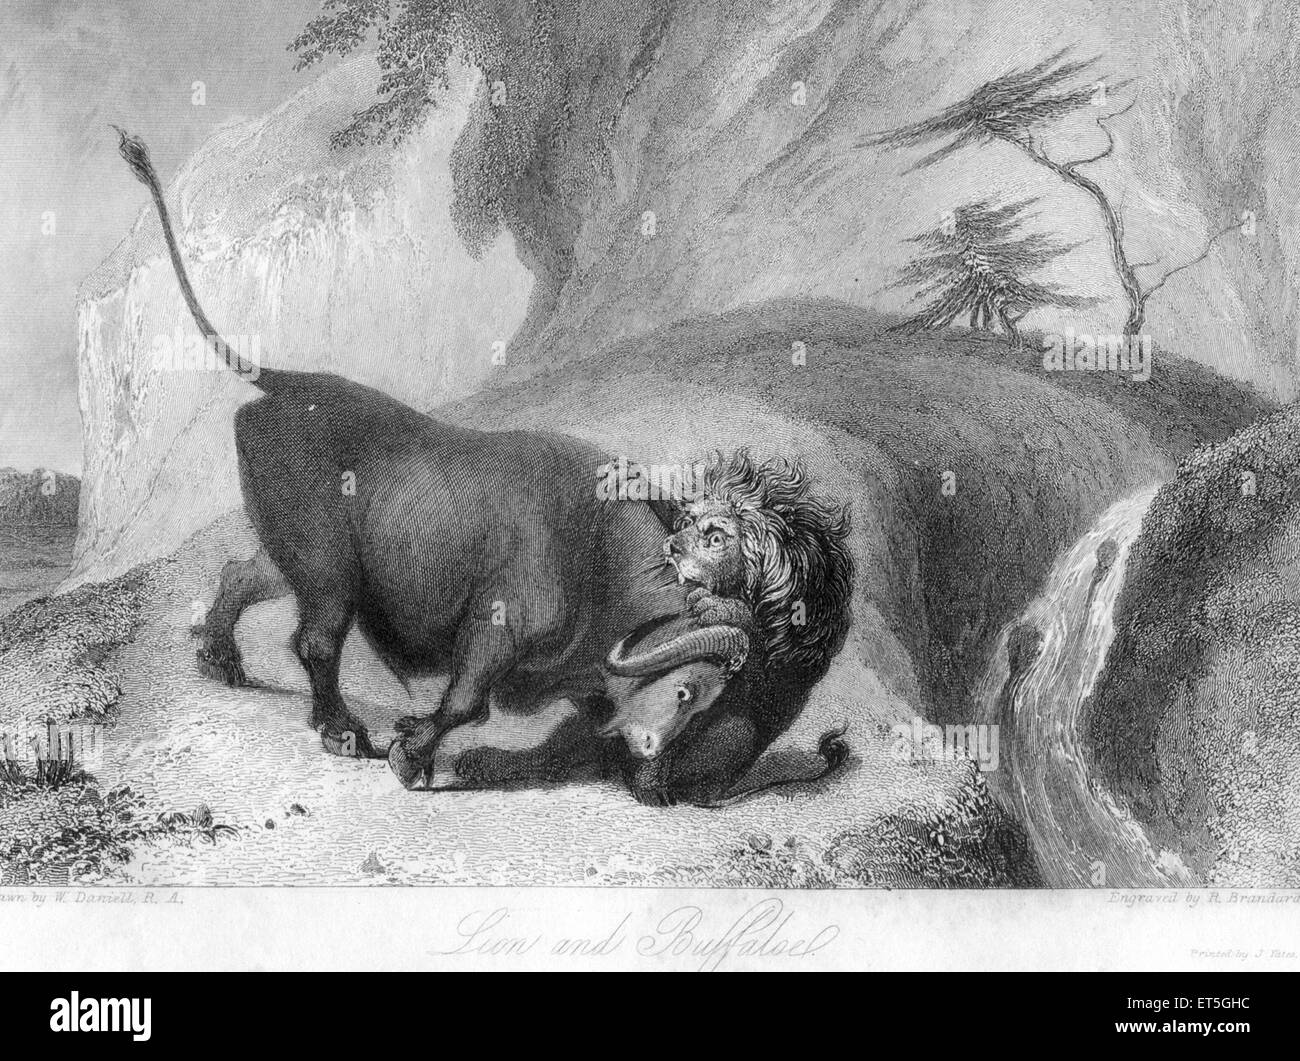 Leone uccidendo bufalo, India, Asia, asiatico, indiano, incisione in acciaio del 1800 d'epoca Foto Stock